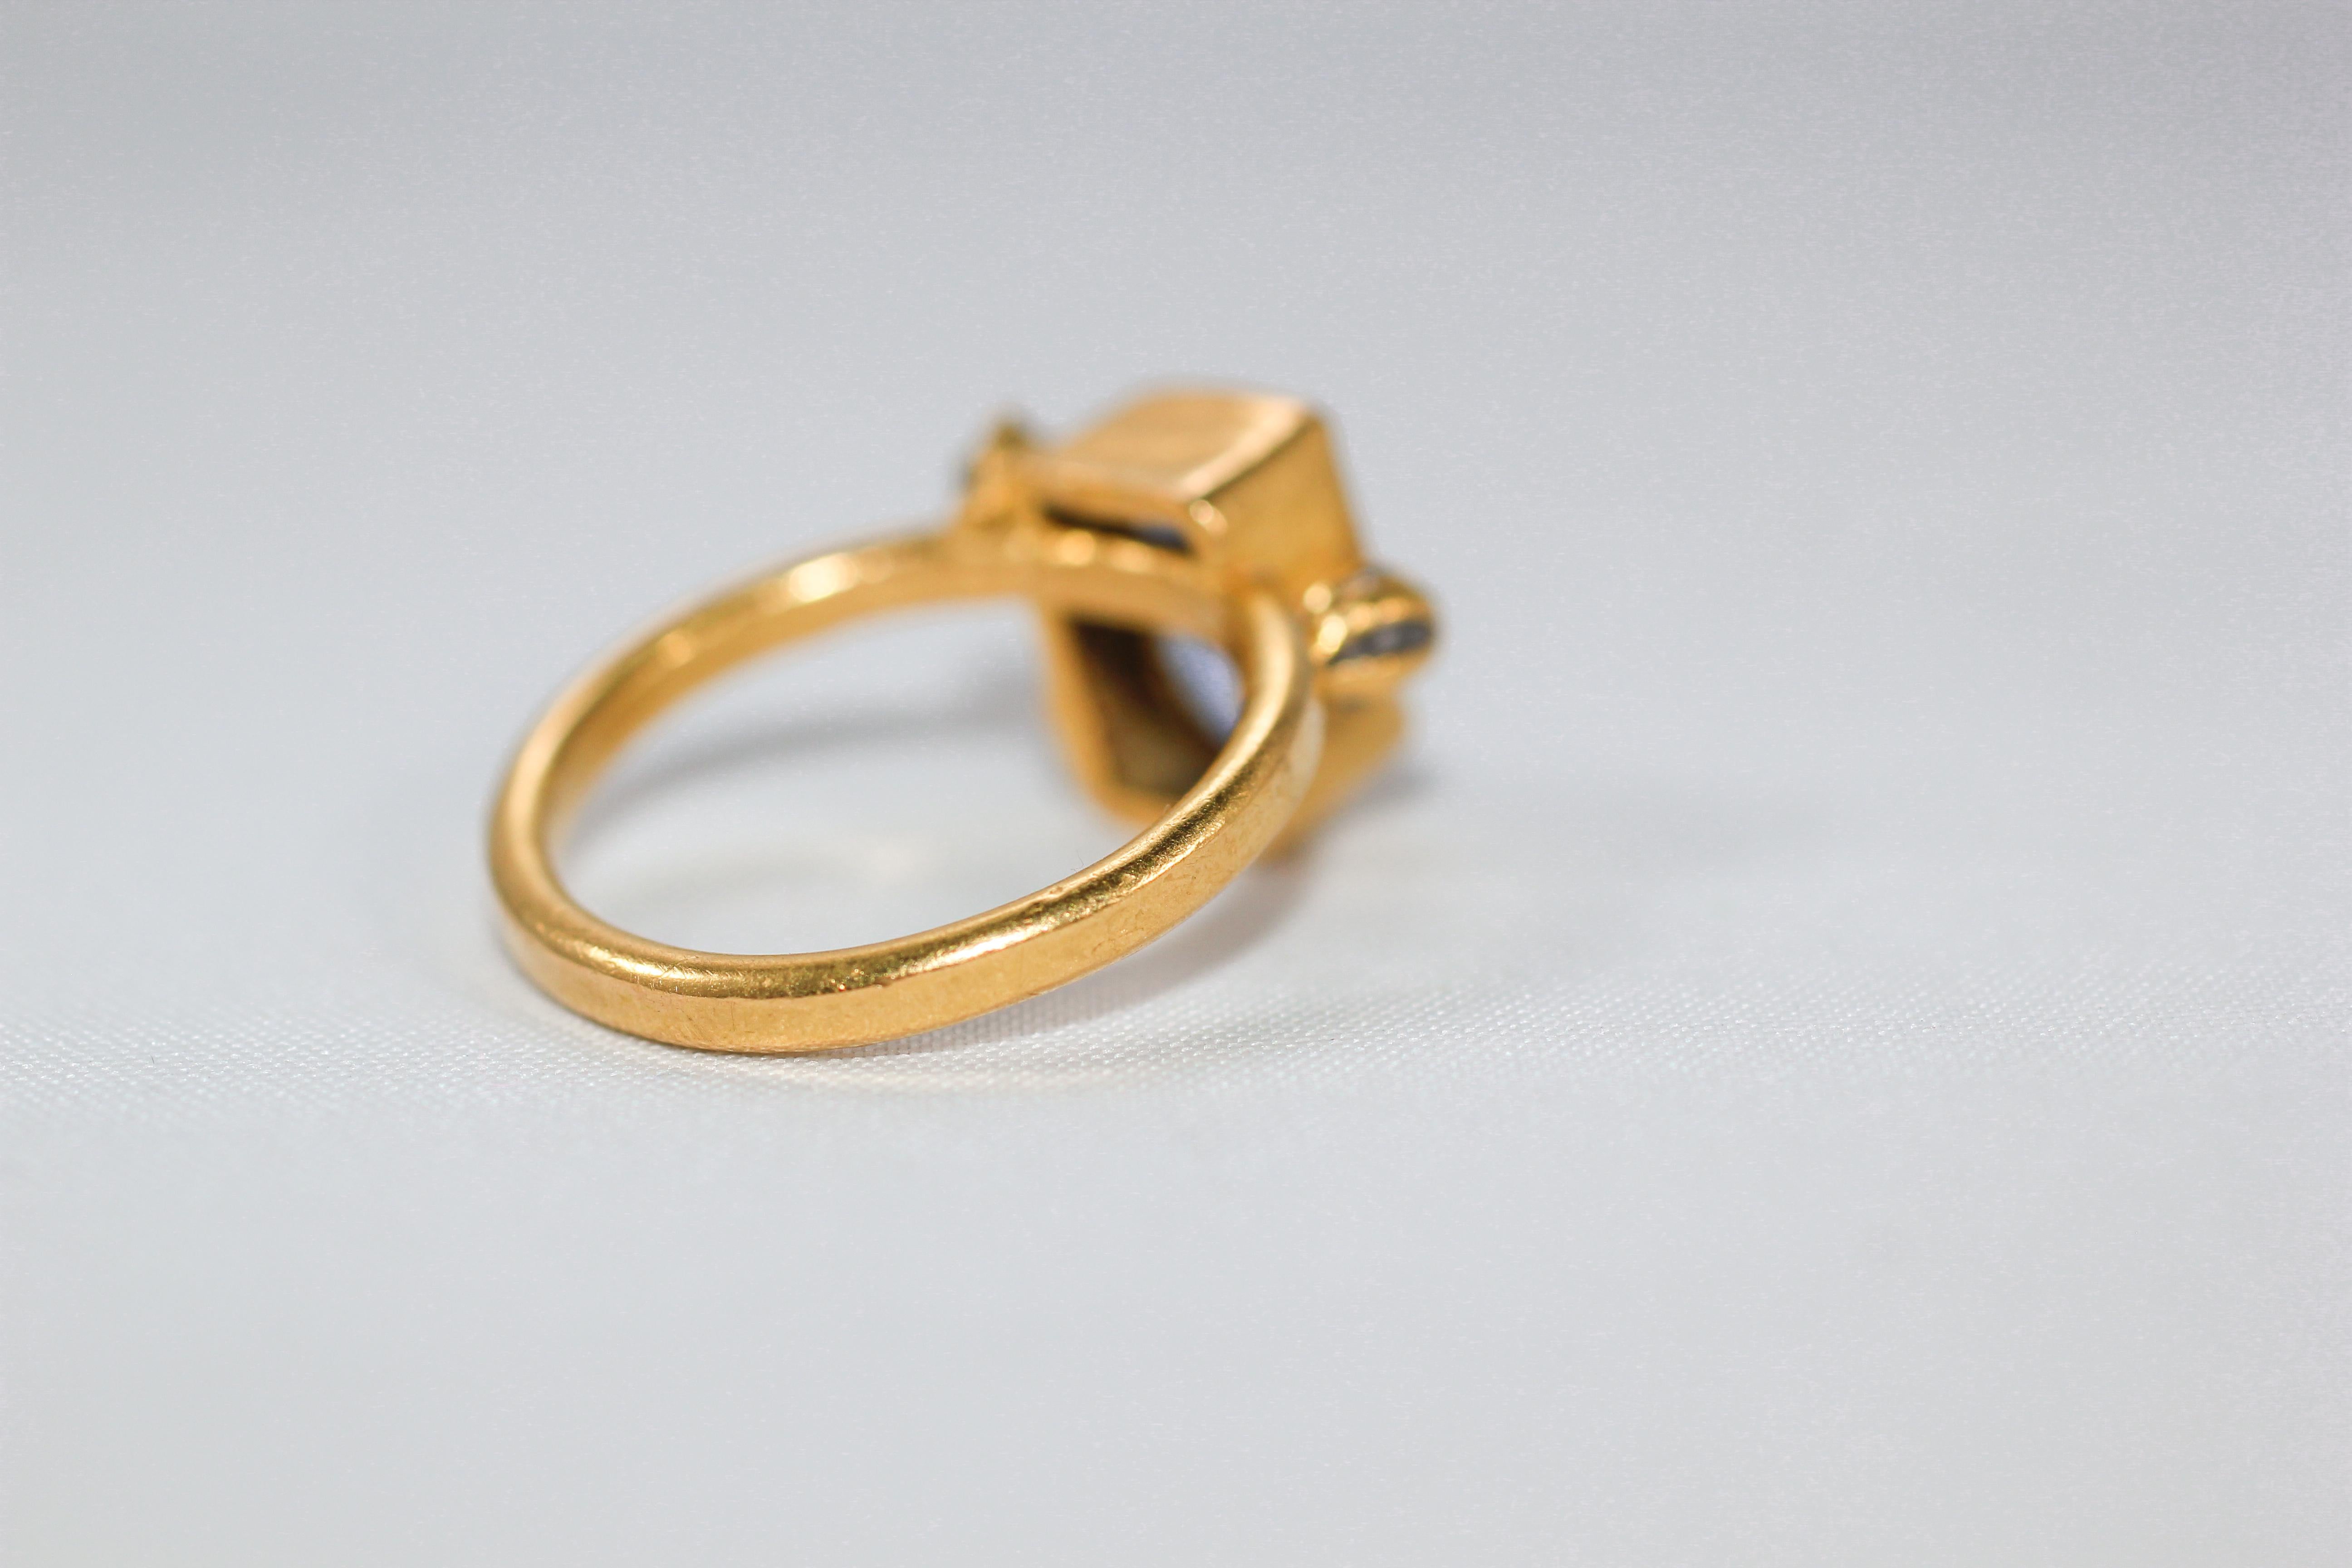 21 karat gold engagement rings